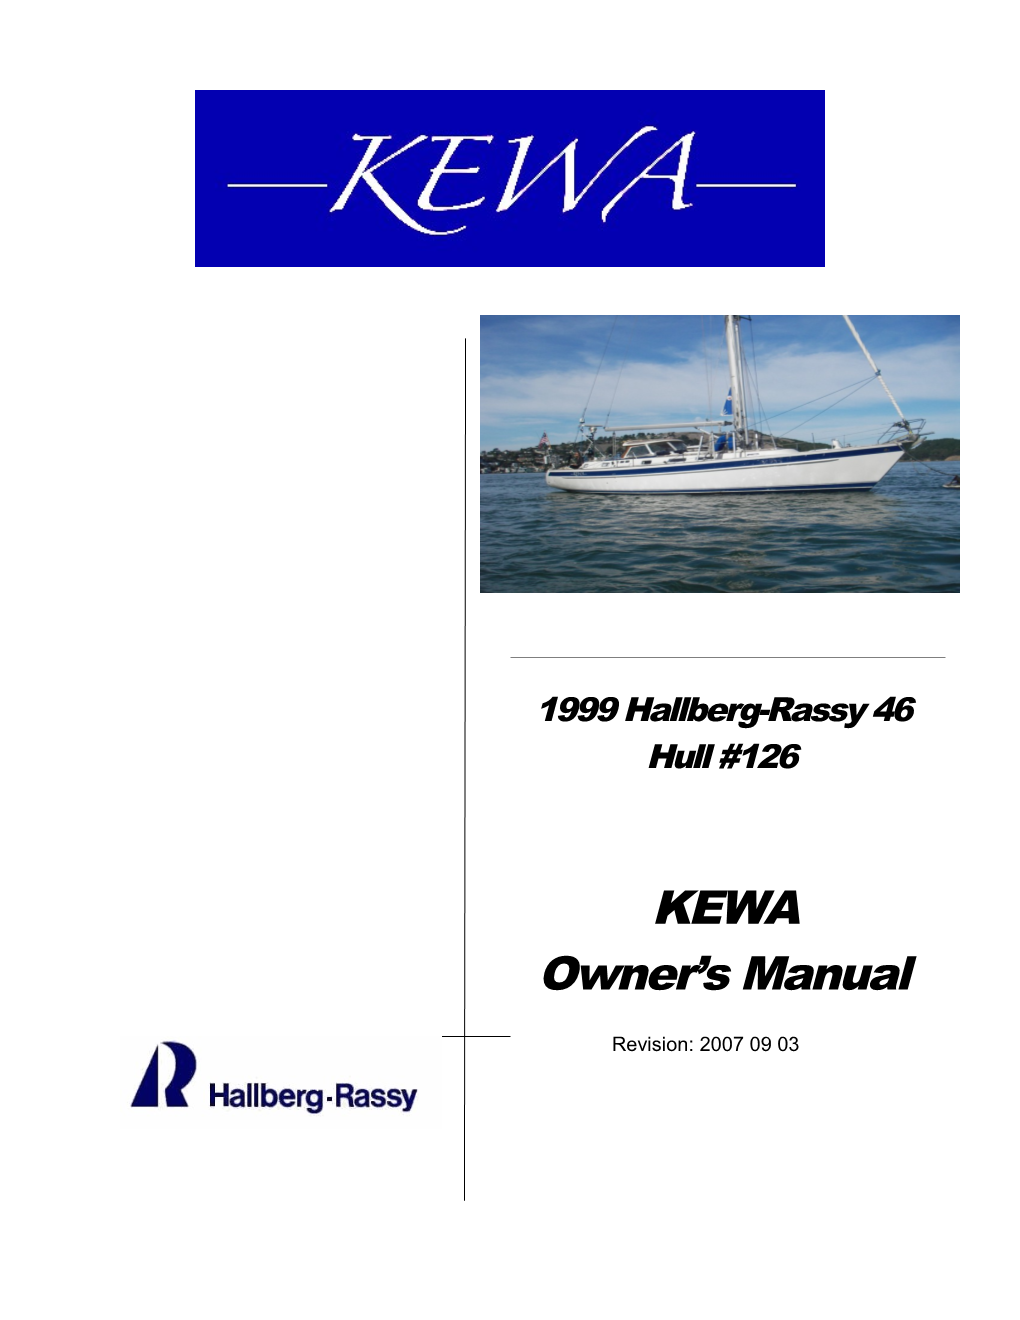 KEWA's Owner's Manual